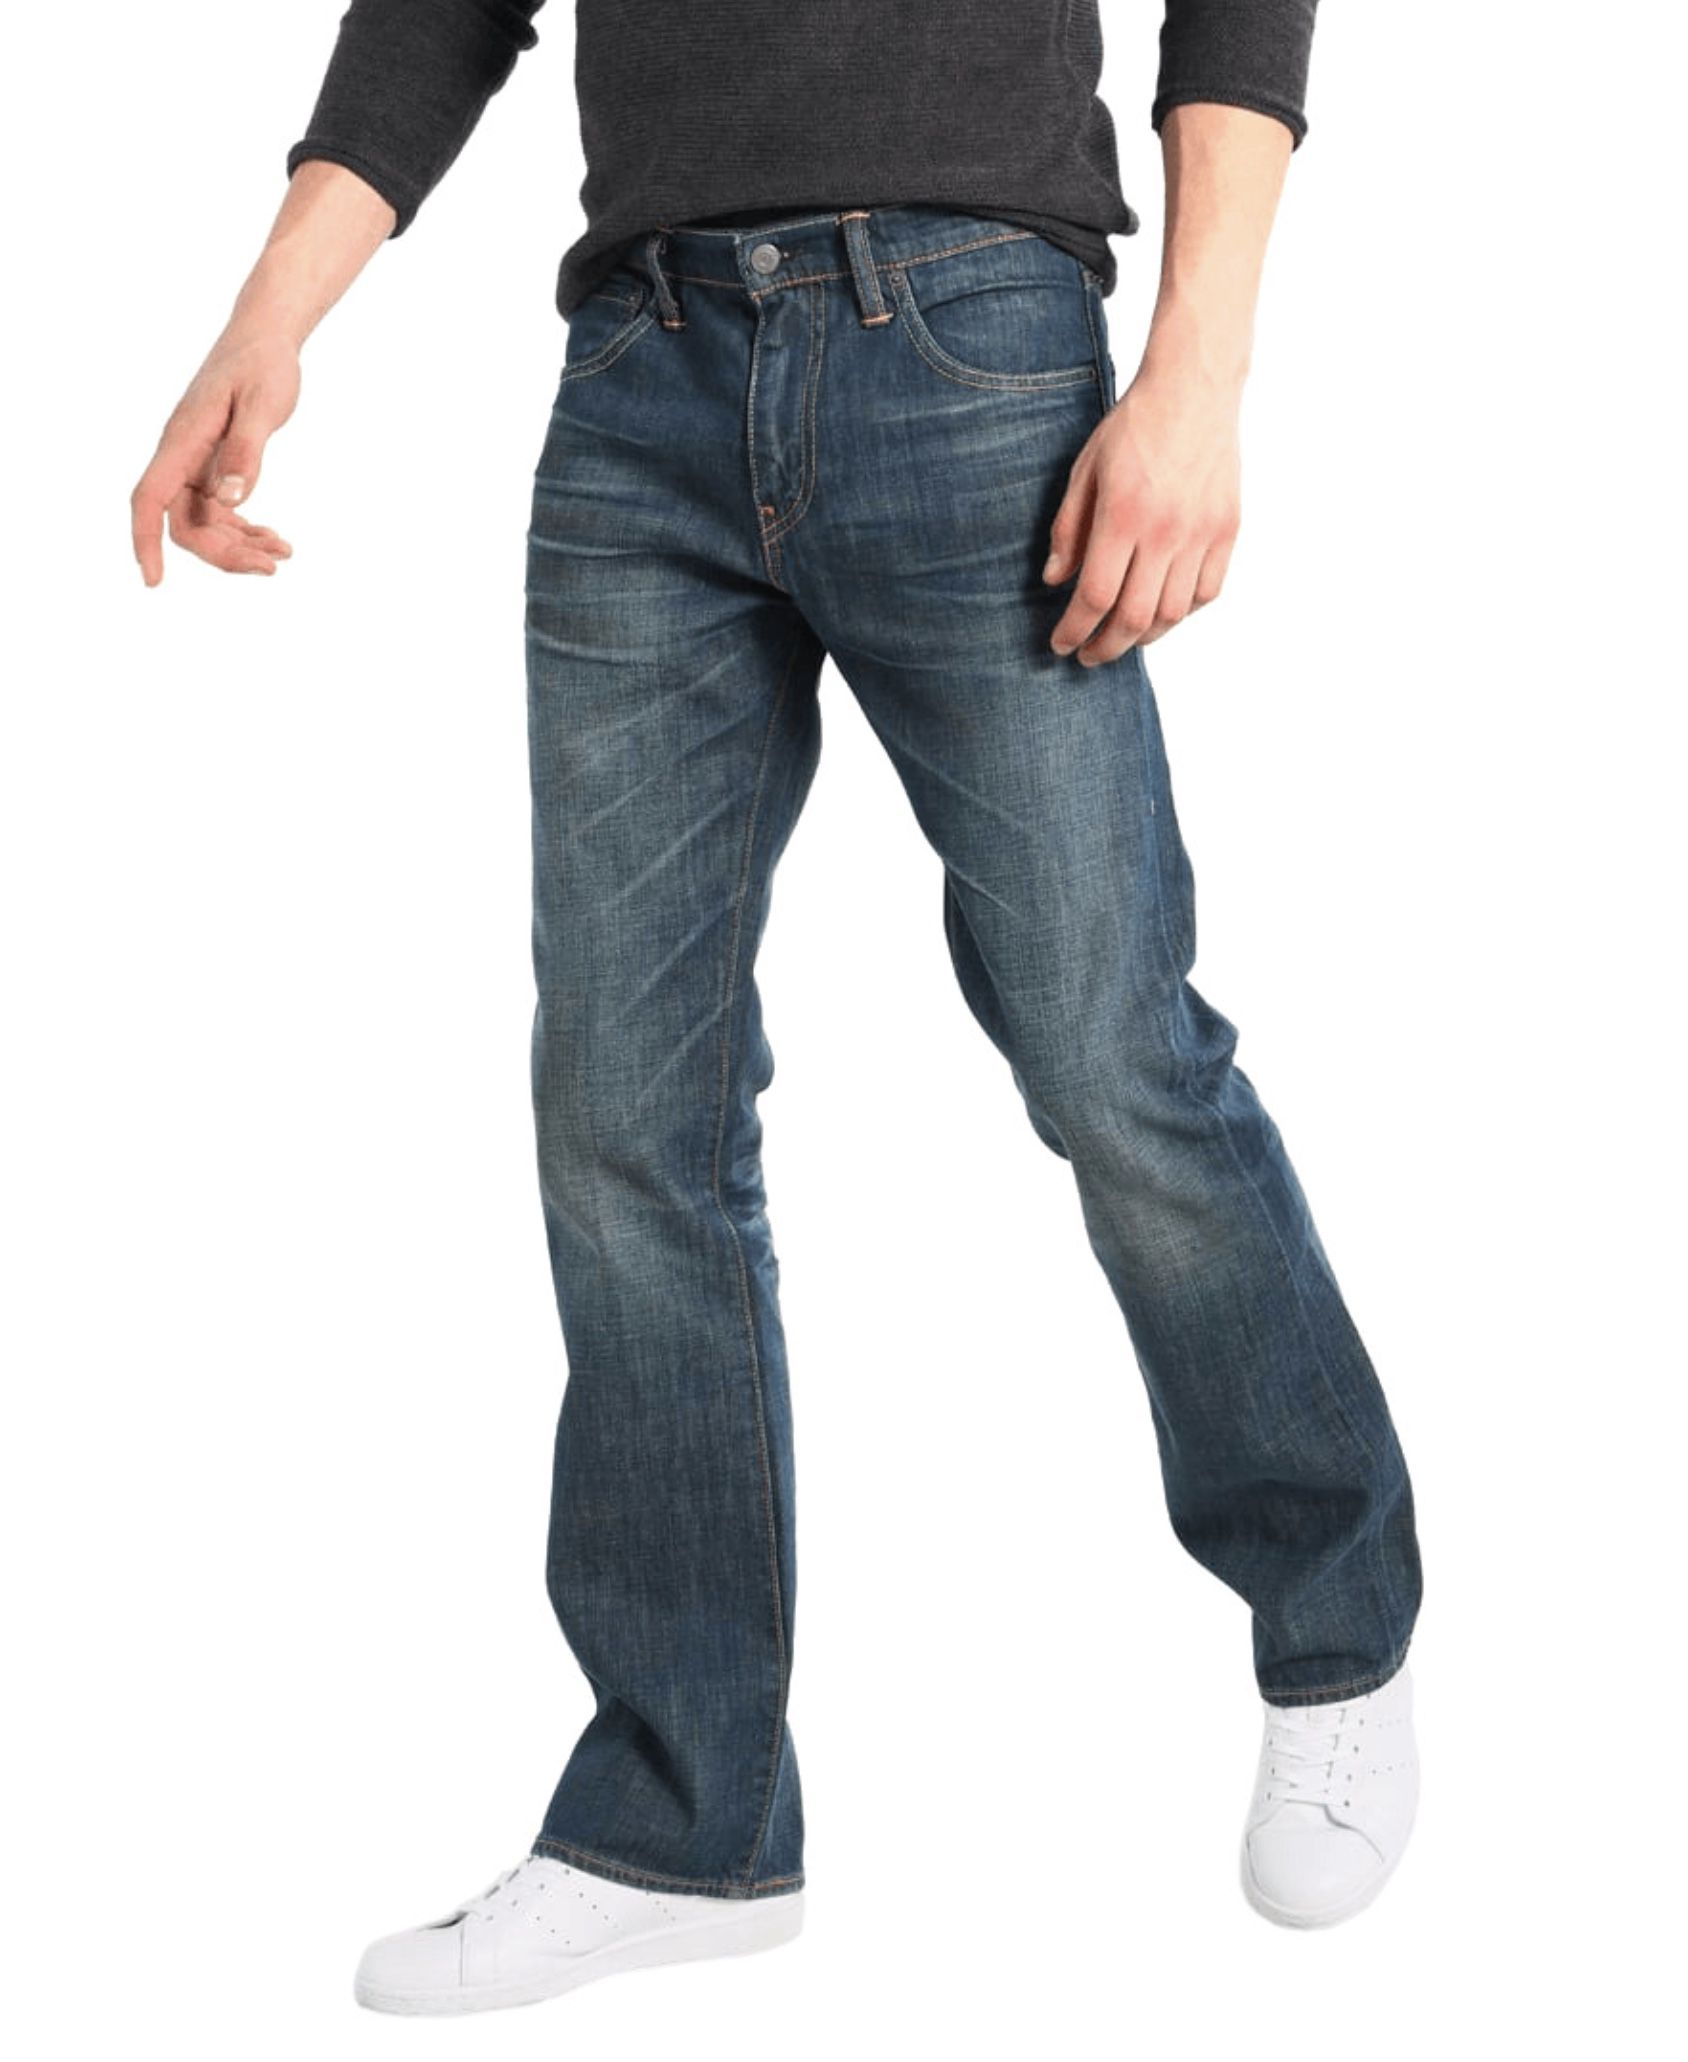 Levis Herren 527 Slim Boot Cut Explorer Jeans für 33,59€ (statt 54€)